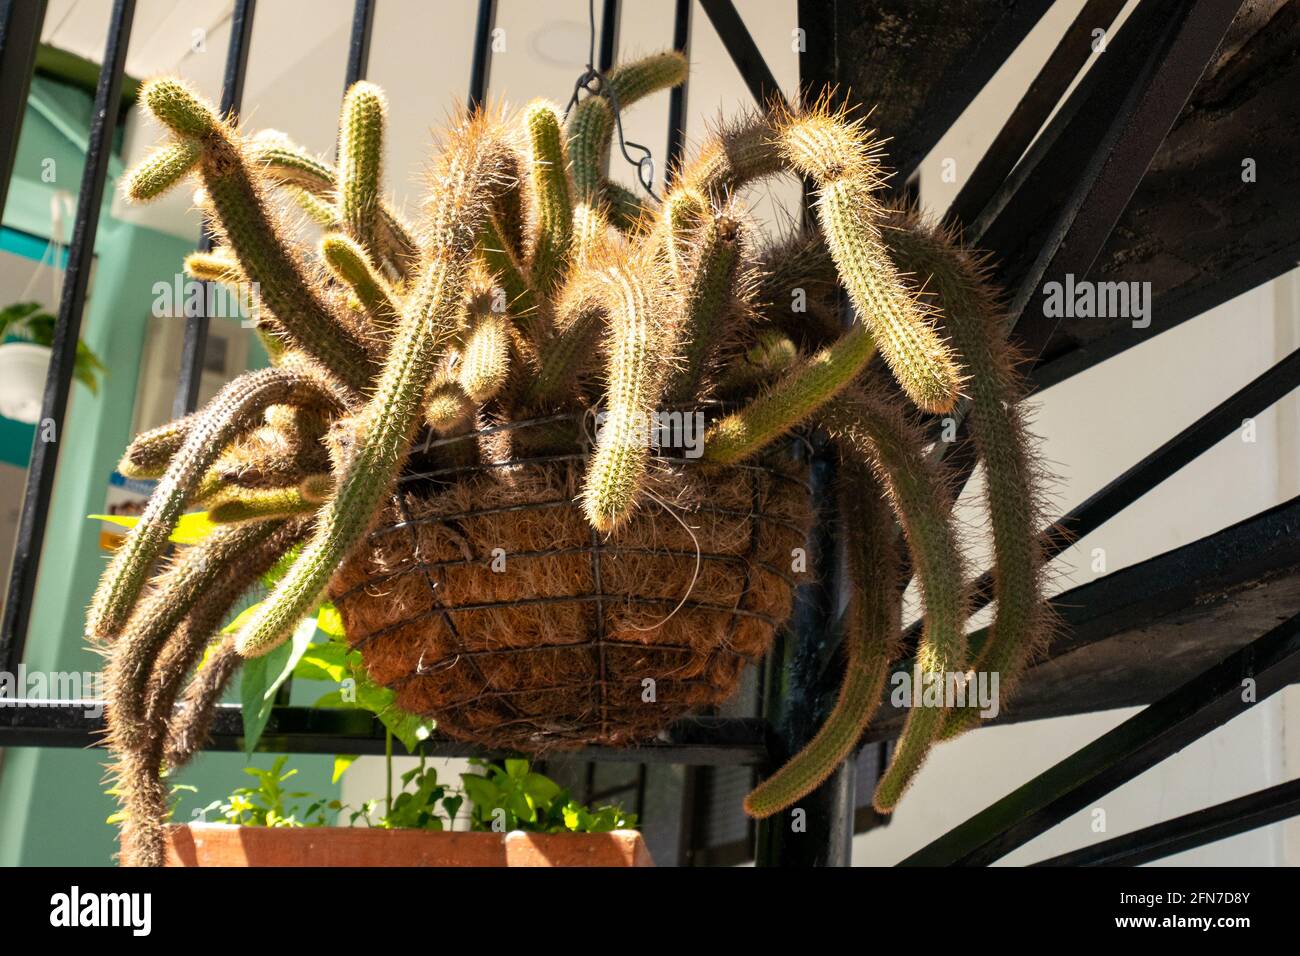 The Rattail Cactus (Aporocactus flagelliformis or Disocactus flagelliformis), a Cactus Plant in a Hanging Pot Stock Photo